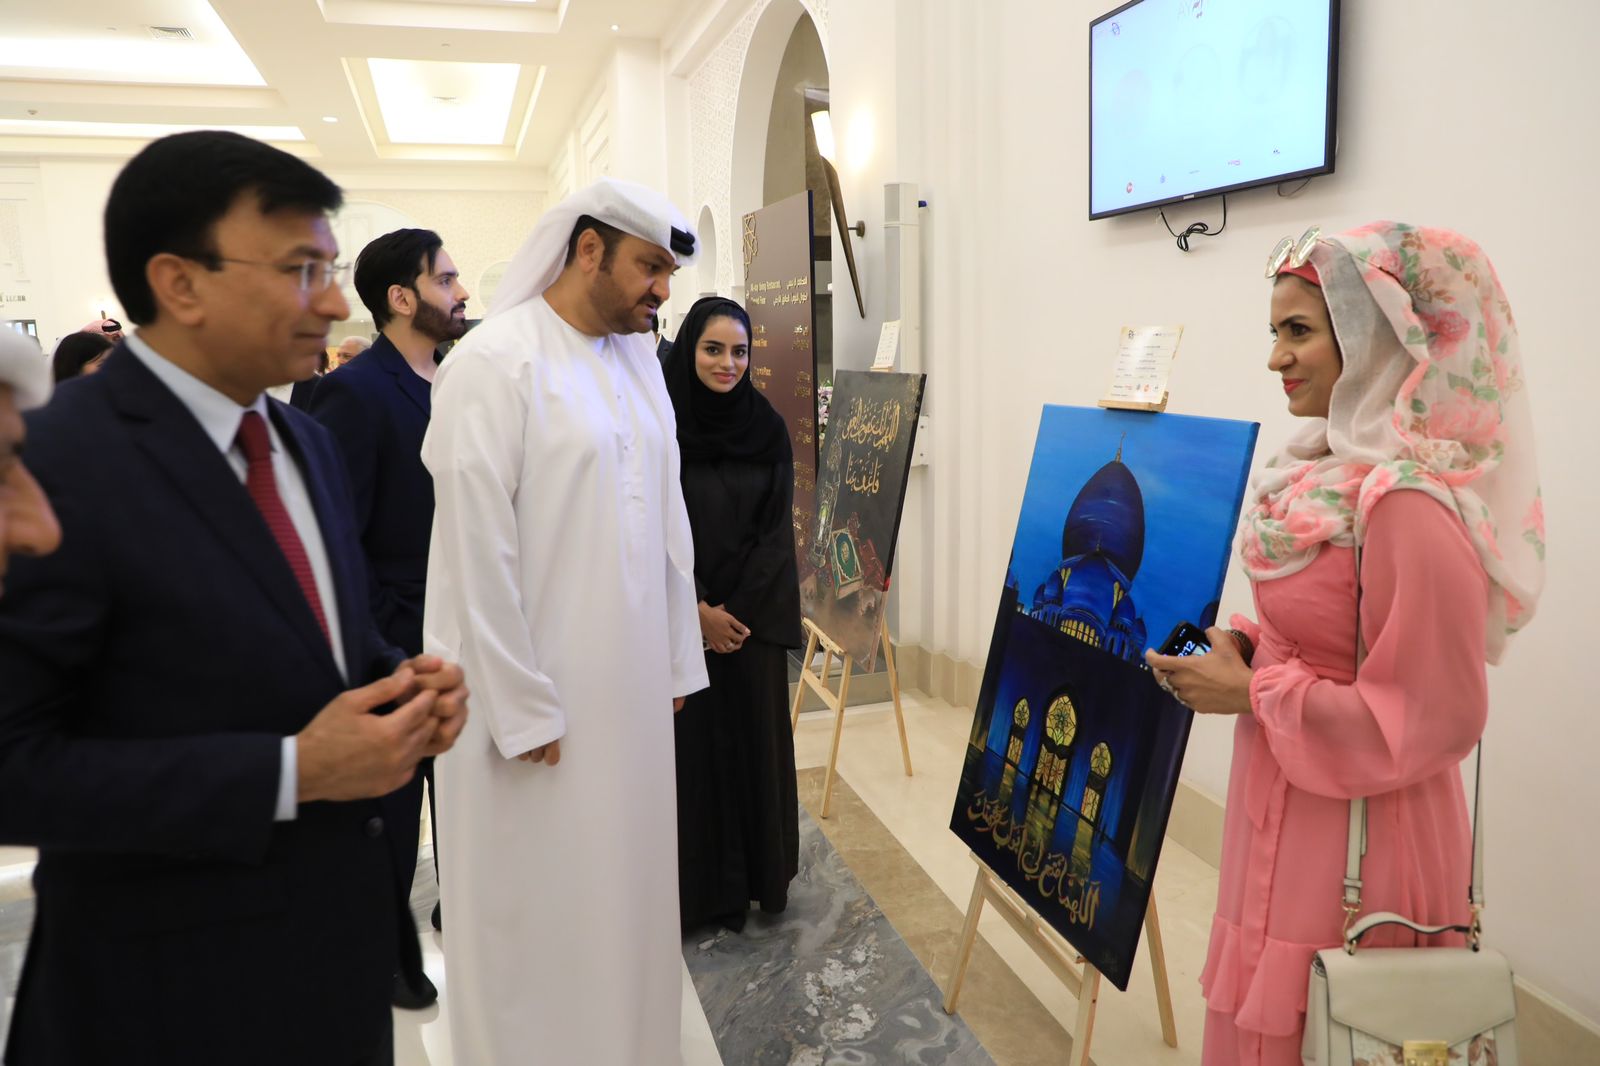 محمود الهاشمي يفتتح معرض "آية" الفني في فندق قصر باهي عجمان